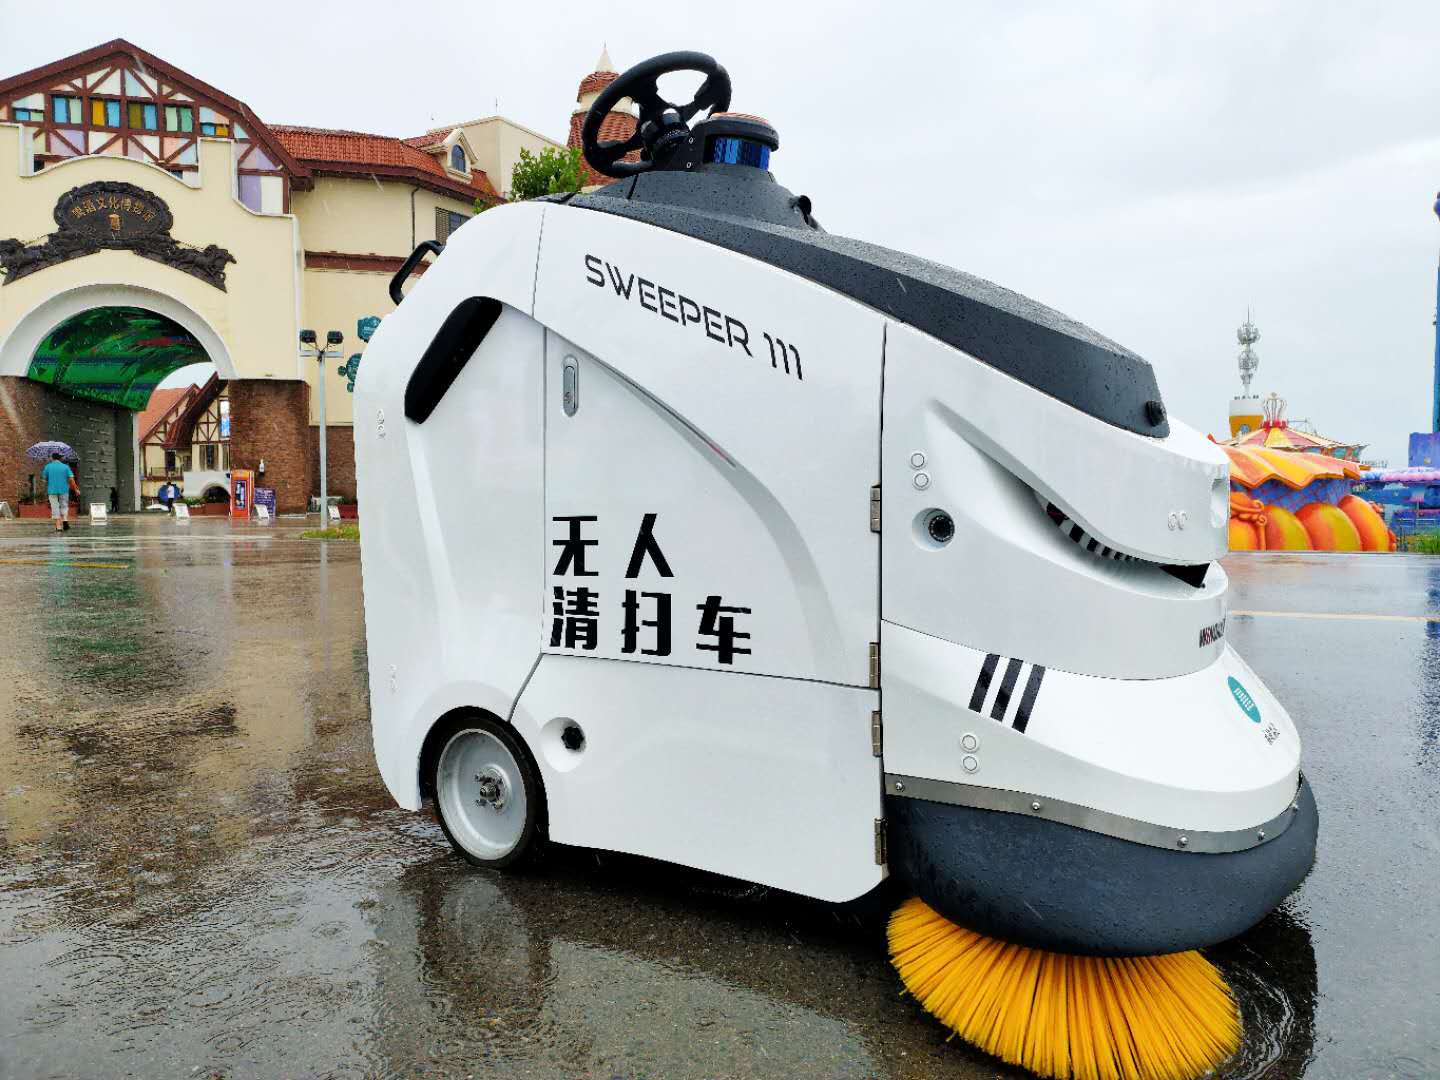 清洁机器人守护青岛金沙滩啤酒城每小时清扫上千平方米